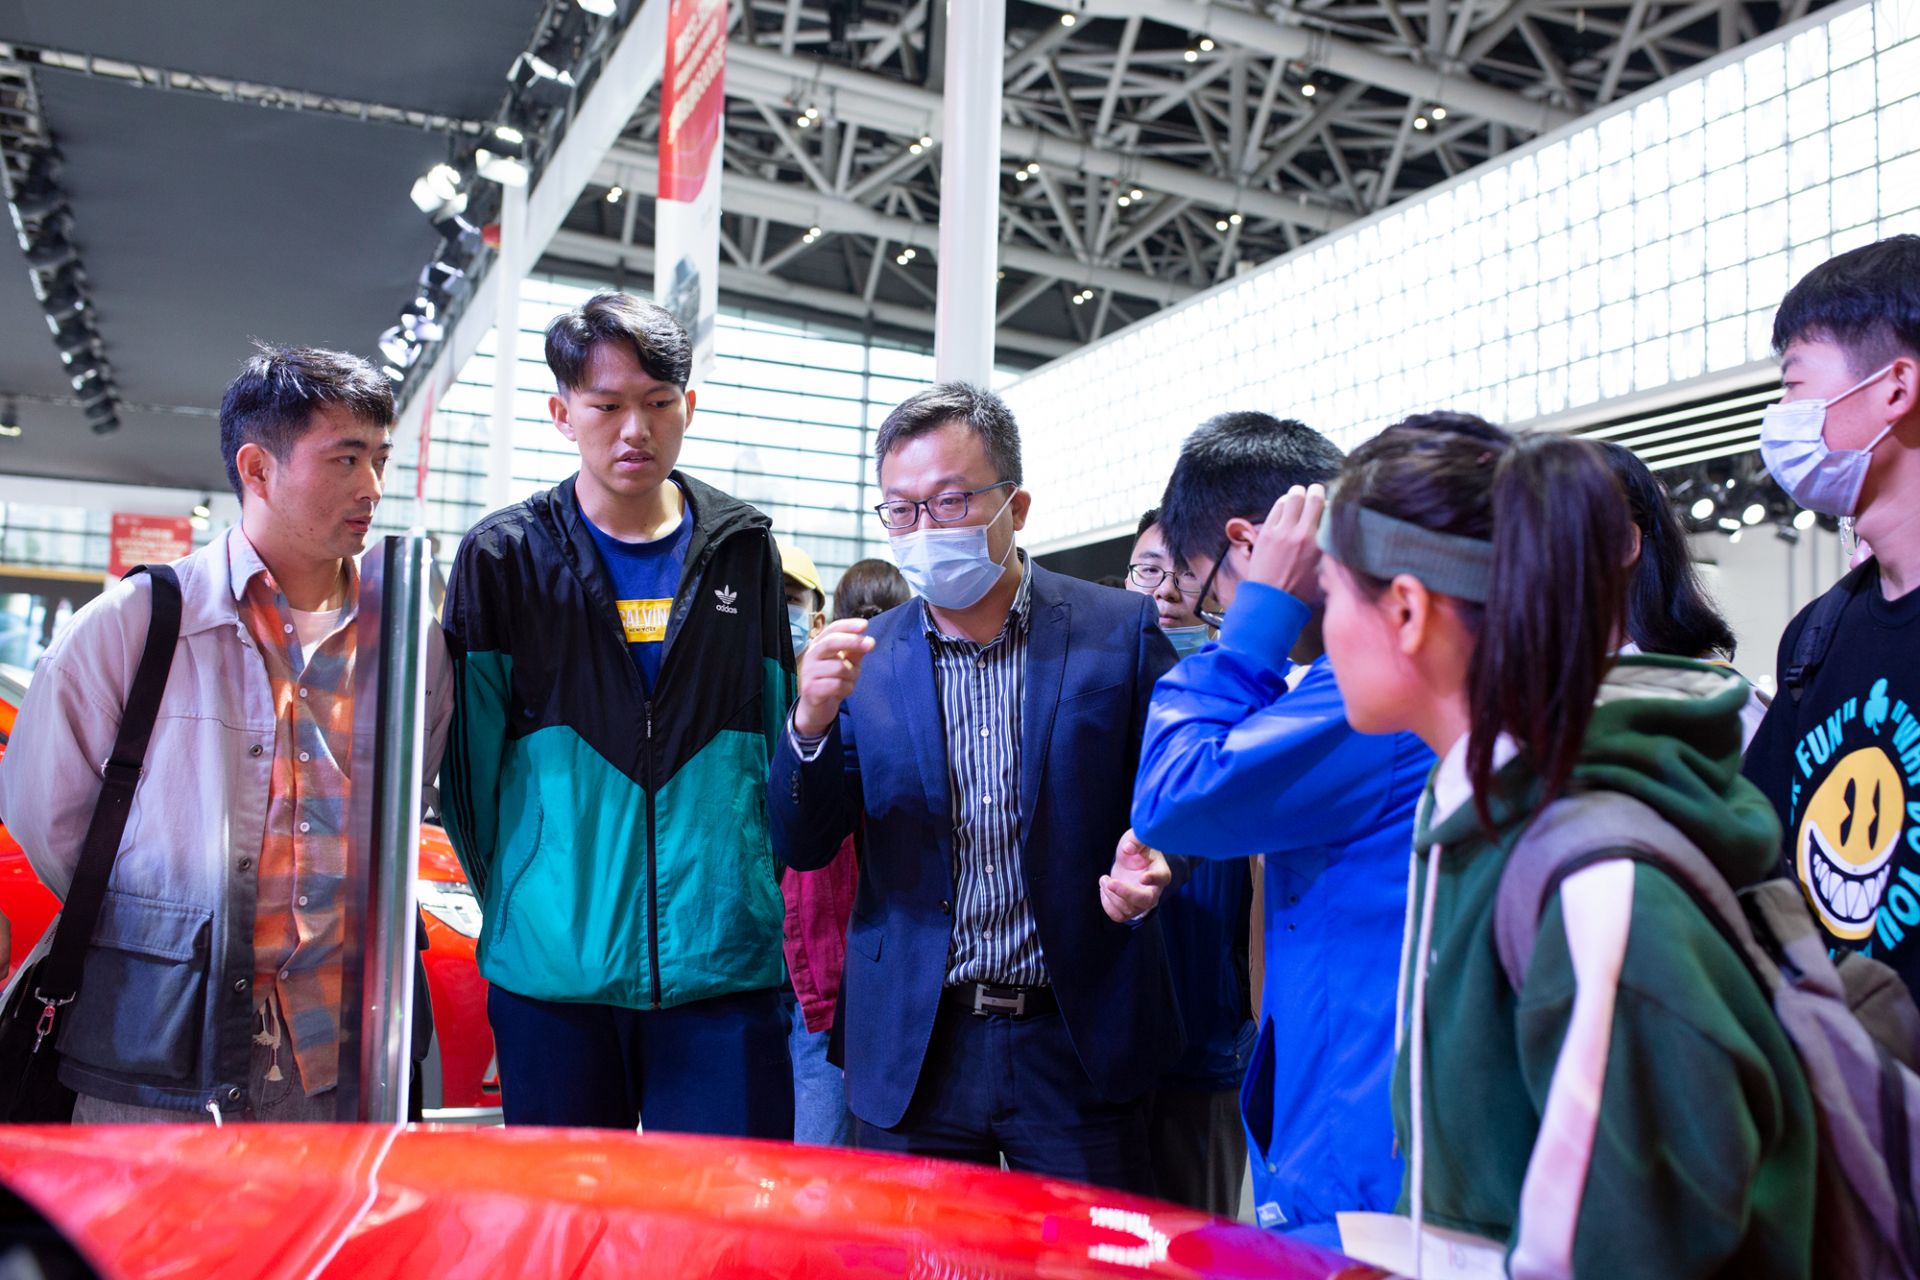 比亚迪汽车销量稳增 汉上市后大受热捧 西安地区已交付200辆